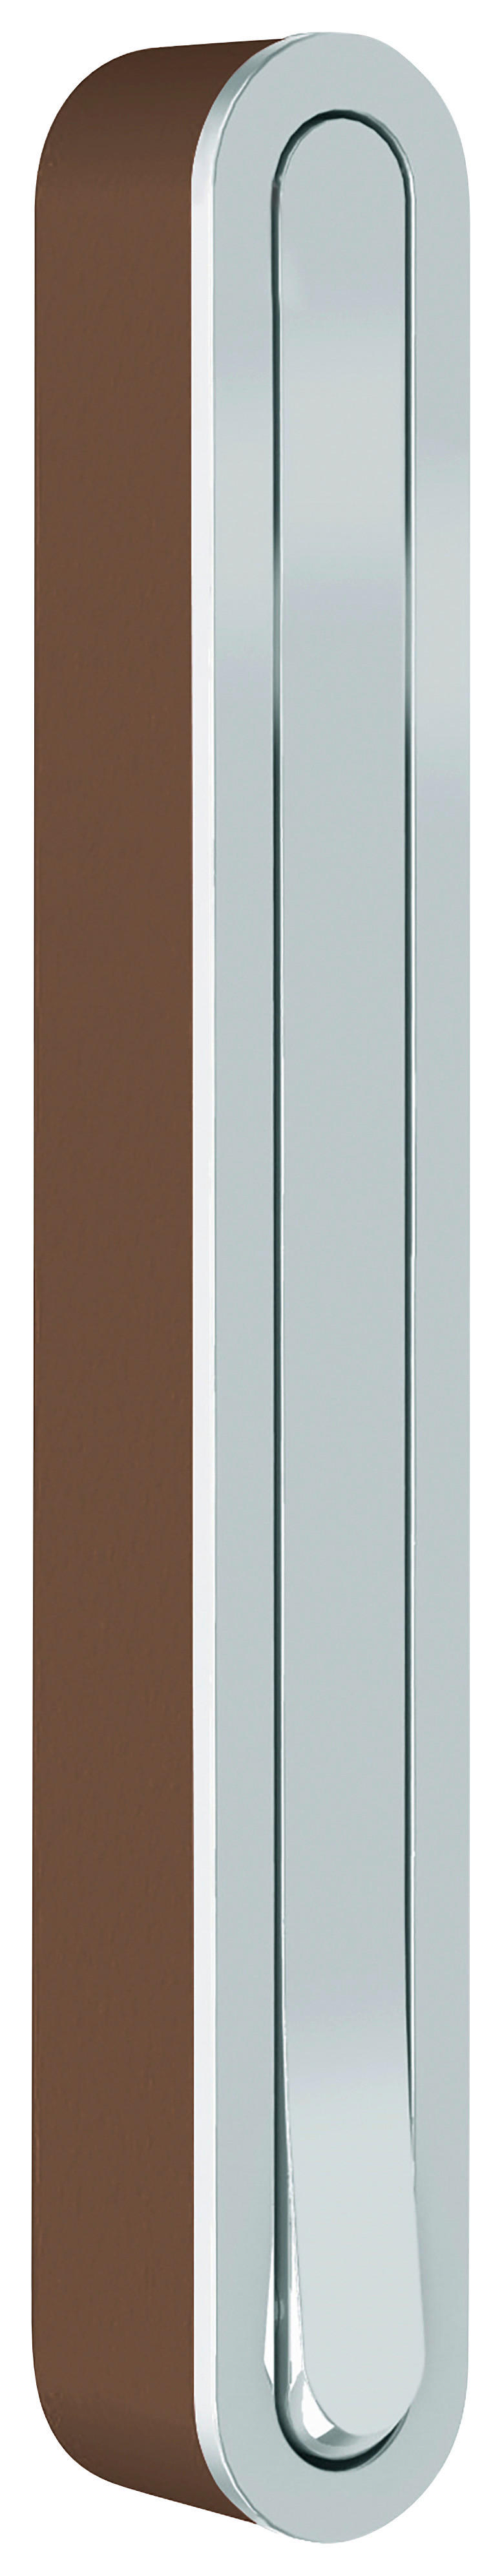 WANDHAKEN Braun, Silberfarben  - Silberfarben/Braun, Design, Kunststoff/Metall (2,1/16/2,1-15,6cm)